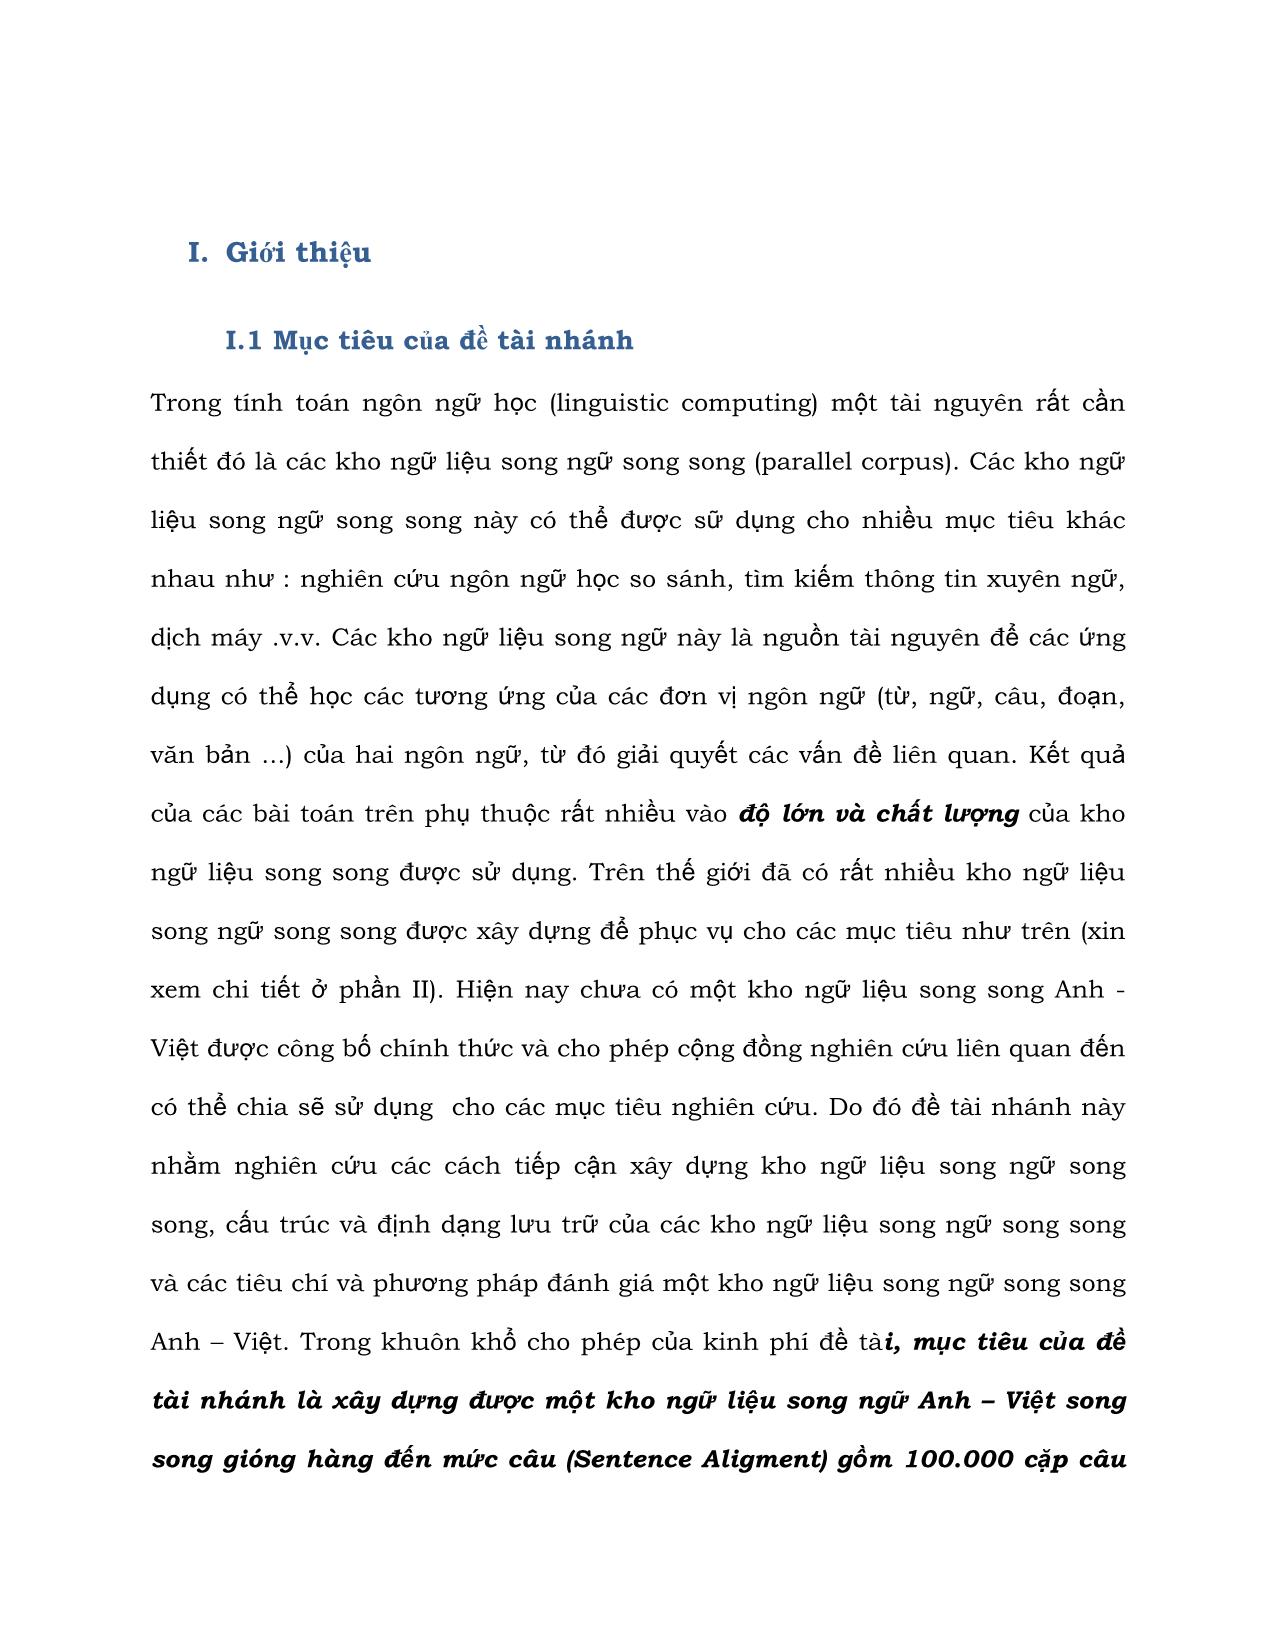 Báo cáo kỹ thuật Xây dựng kho ngữ liệu song ngữ Anh - Việt trang 4